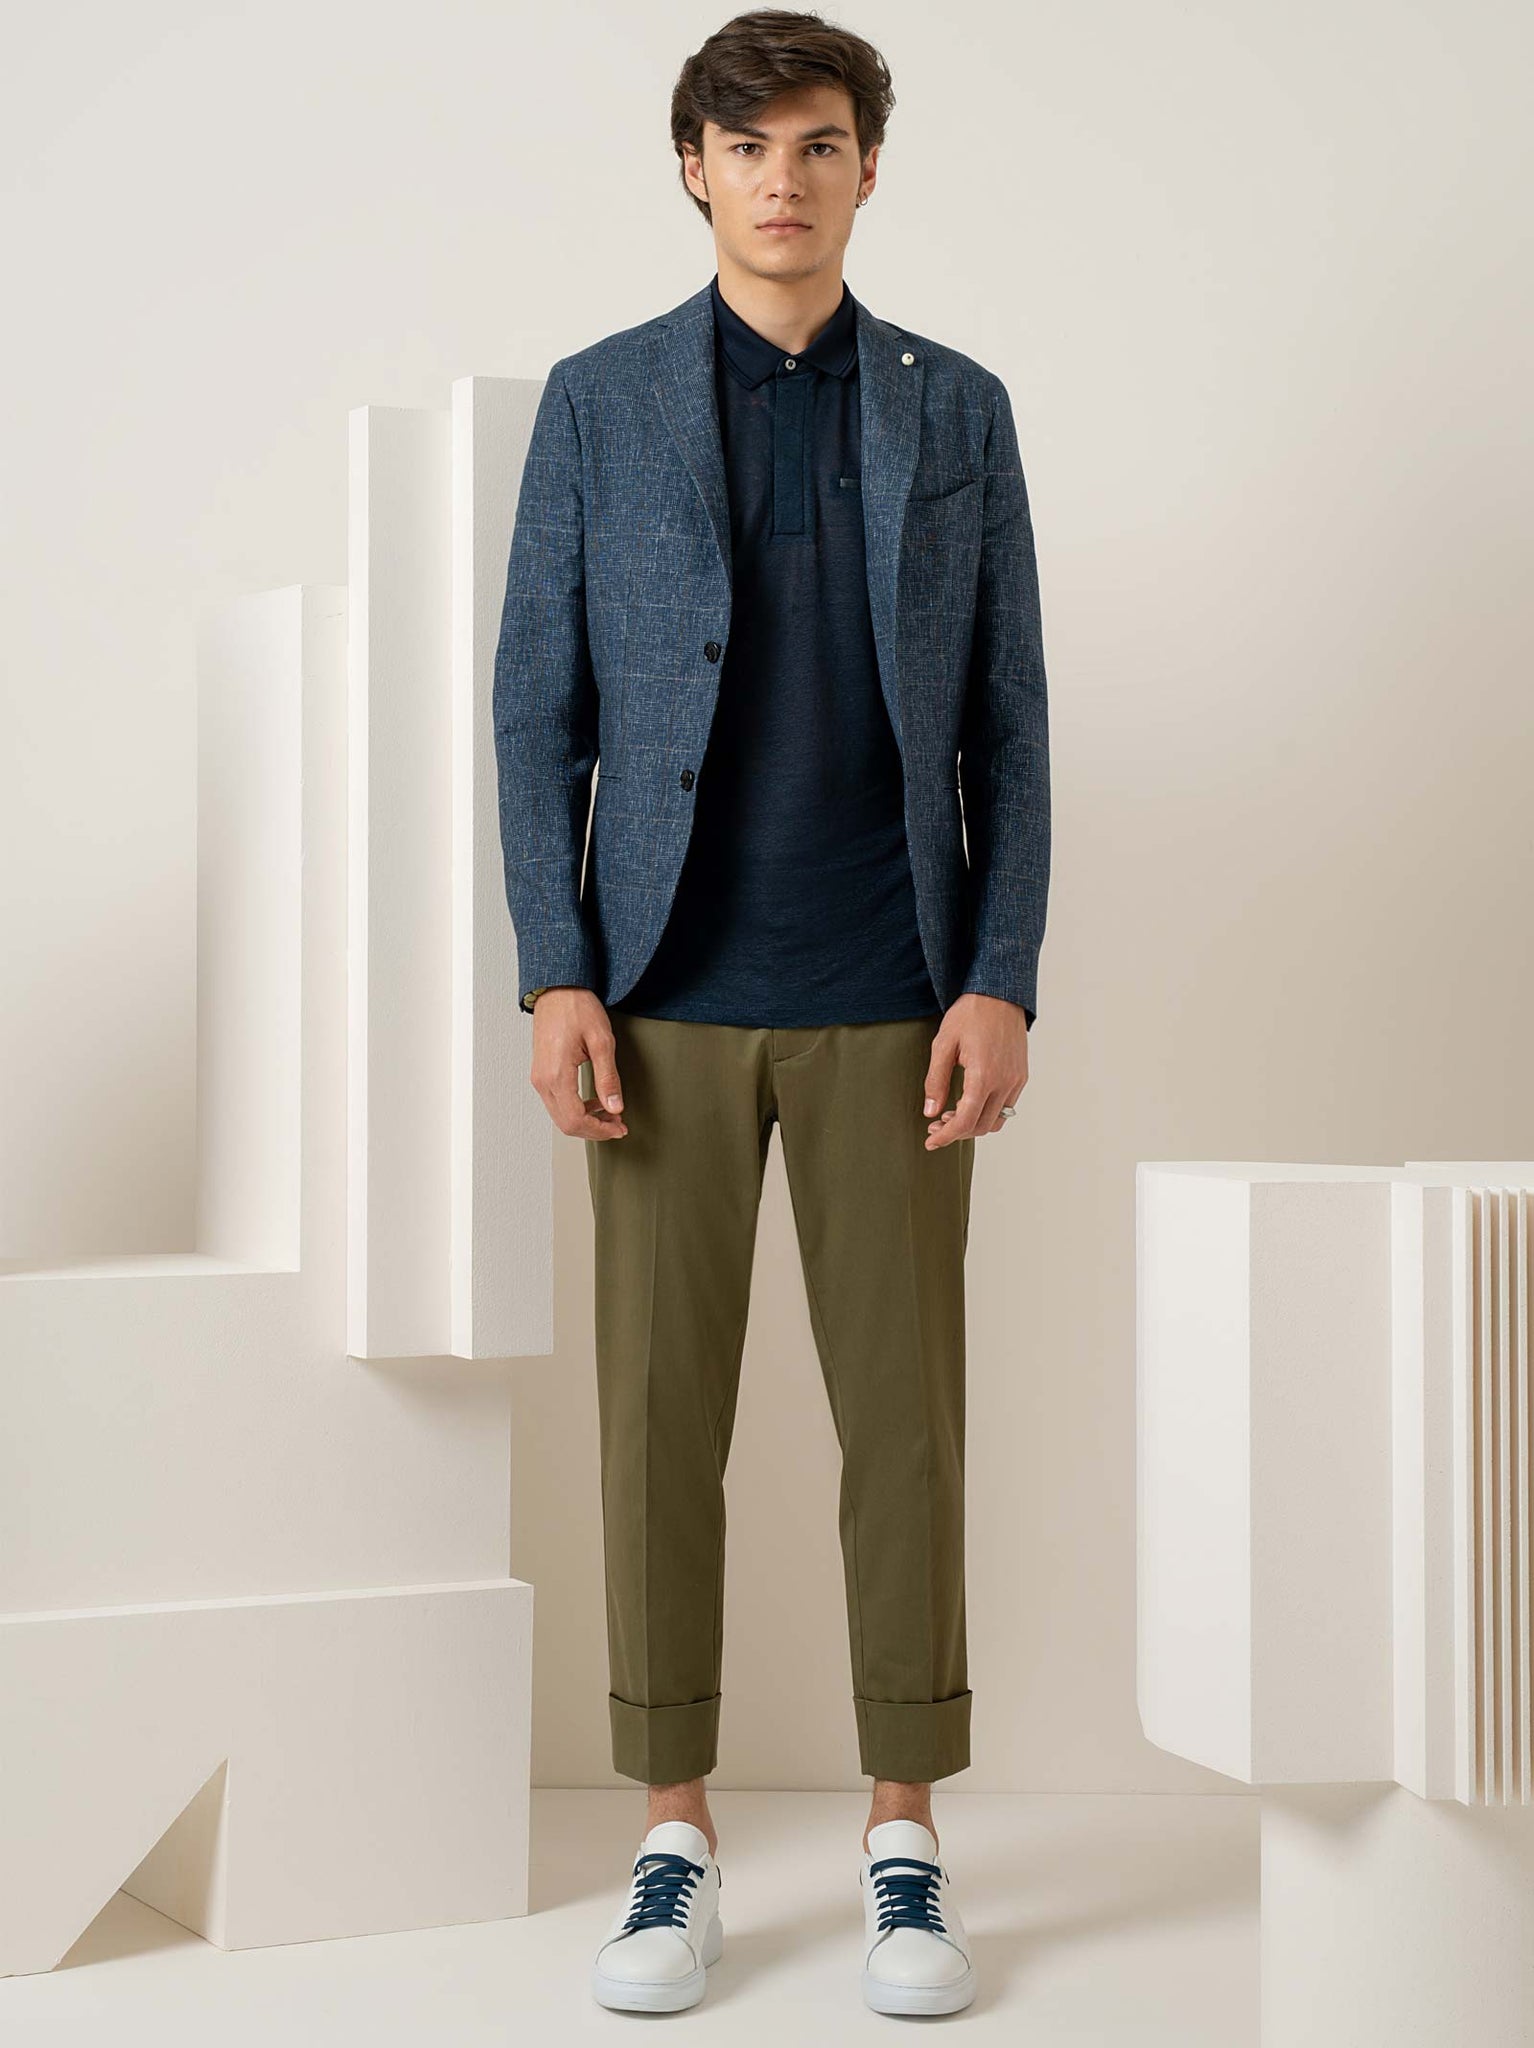 Pantaloni in cotone con risvolti, coulisse in vita e logo sul retro / Blu - Ideal Moda